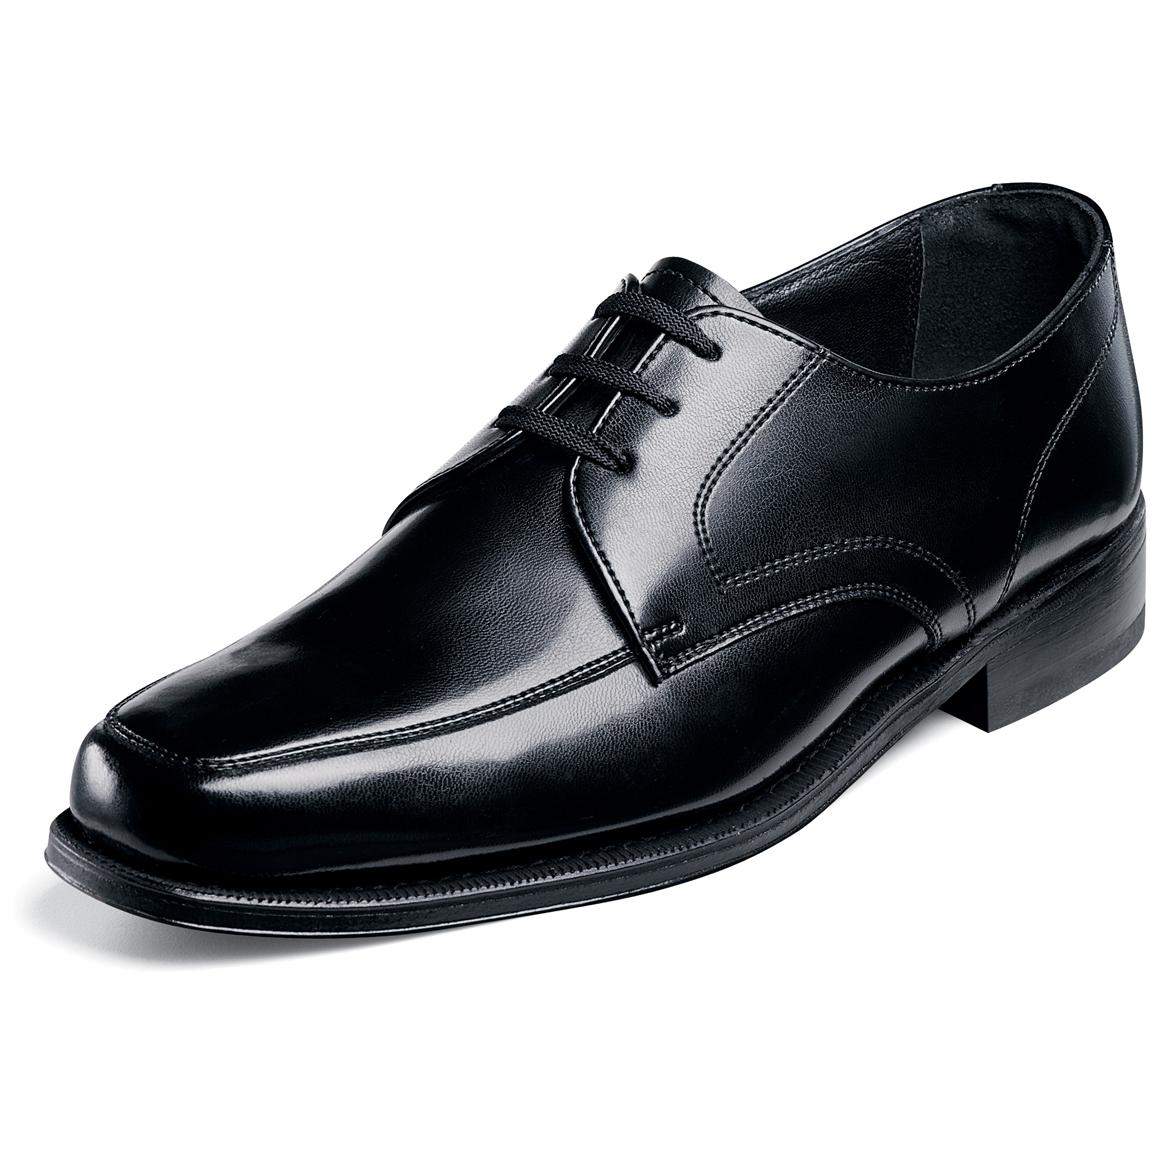 Men's Florsheim Richfield Moc Toe Oxford Shoes - 426810, Dress Shoes